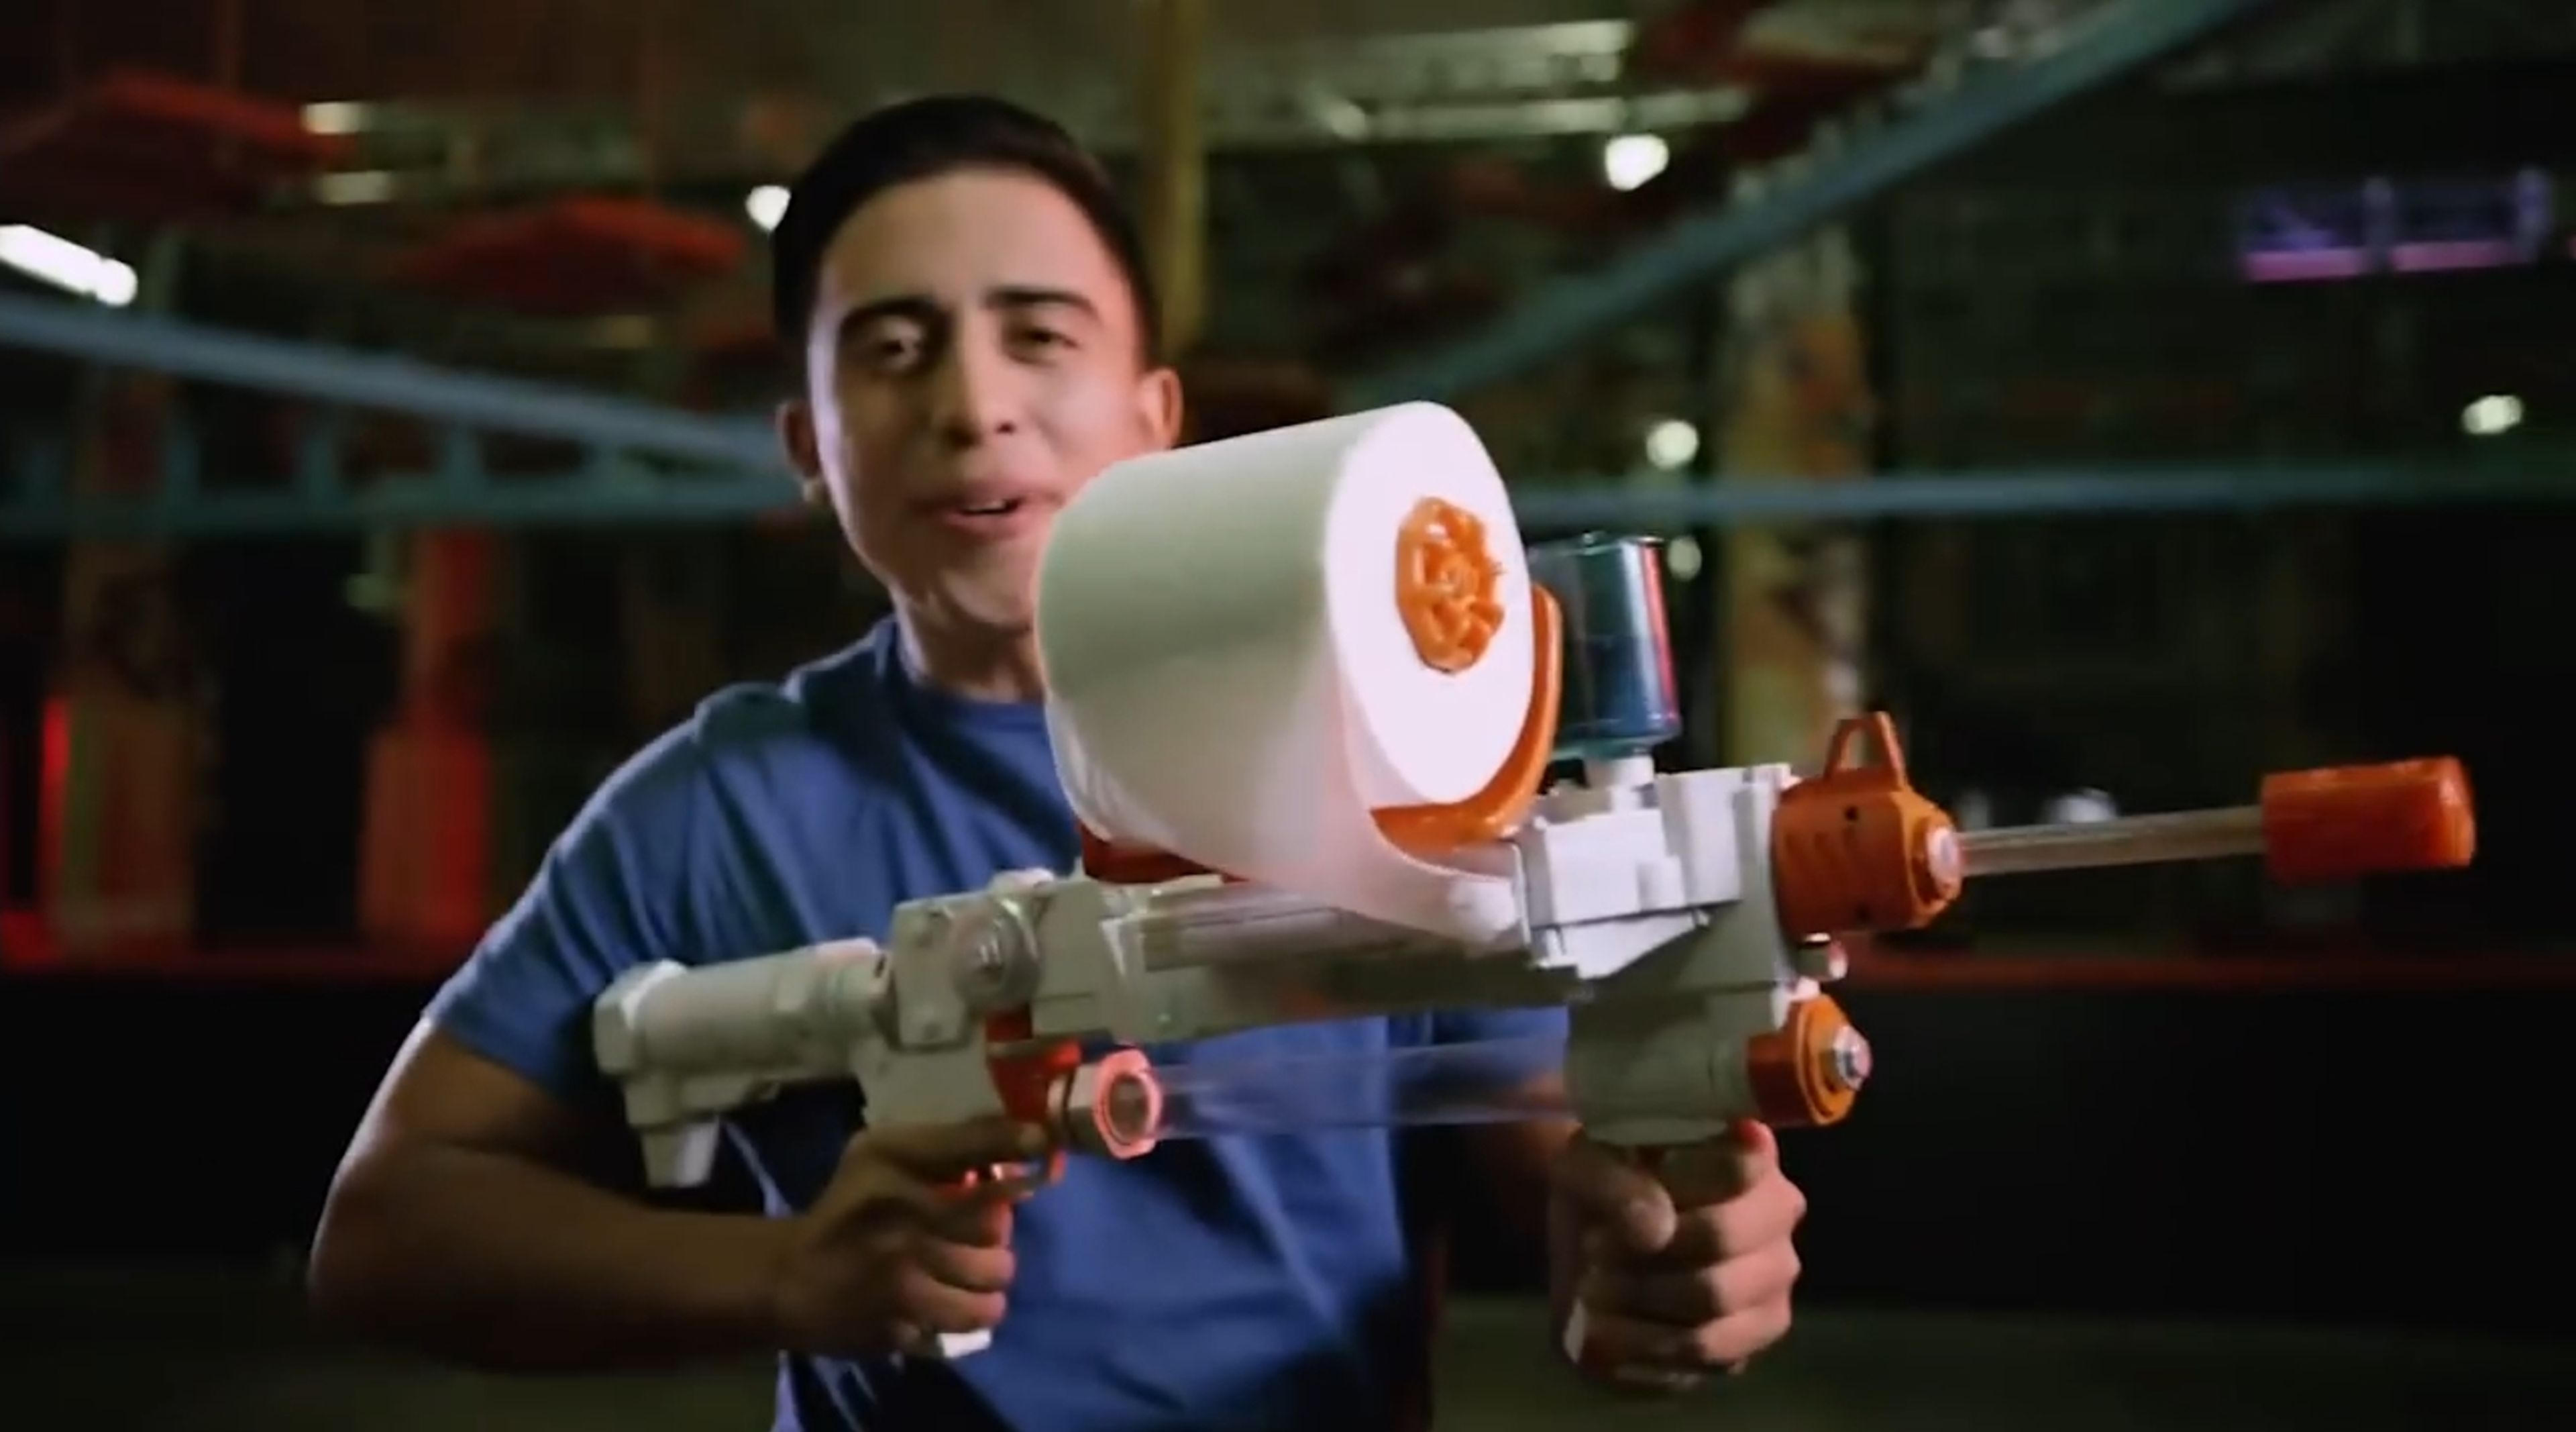 Toilet Paper Blasters, la pistola que dispara "balas" de papel higiénico